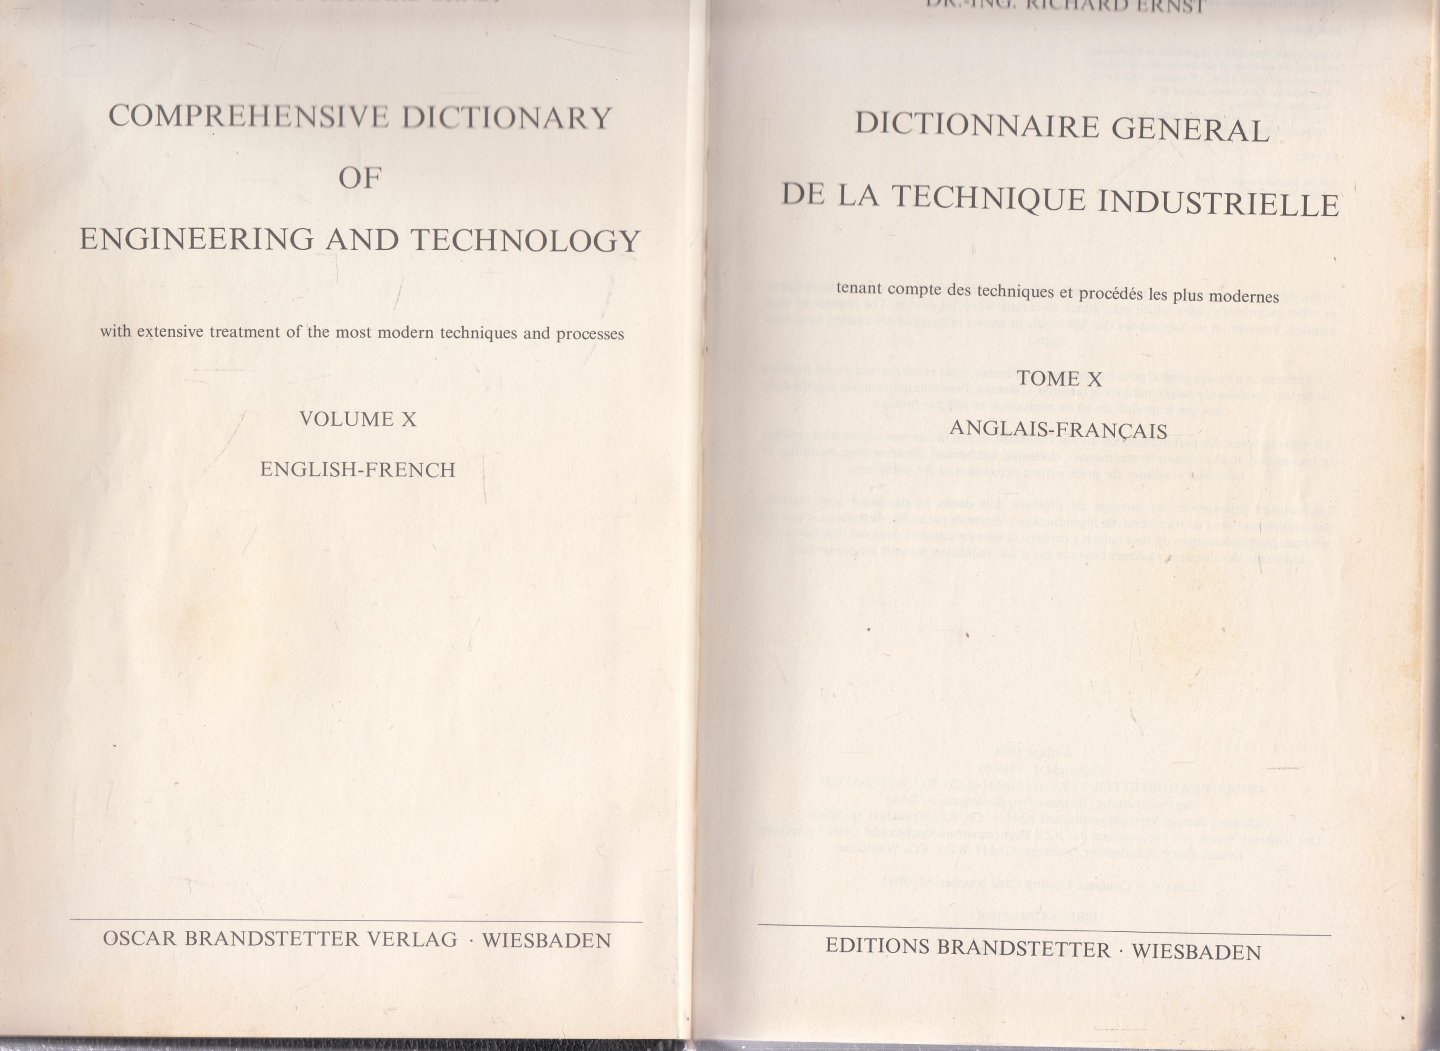 Ernst, Dr.-Ing. Richard - Dictionnnaire general de la technique industrielle, Tome X, Anglais-Francais